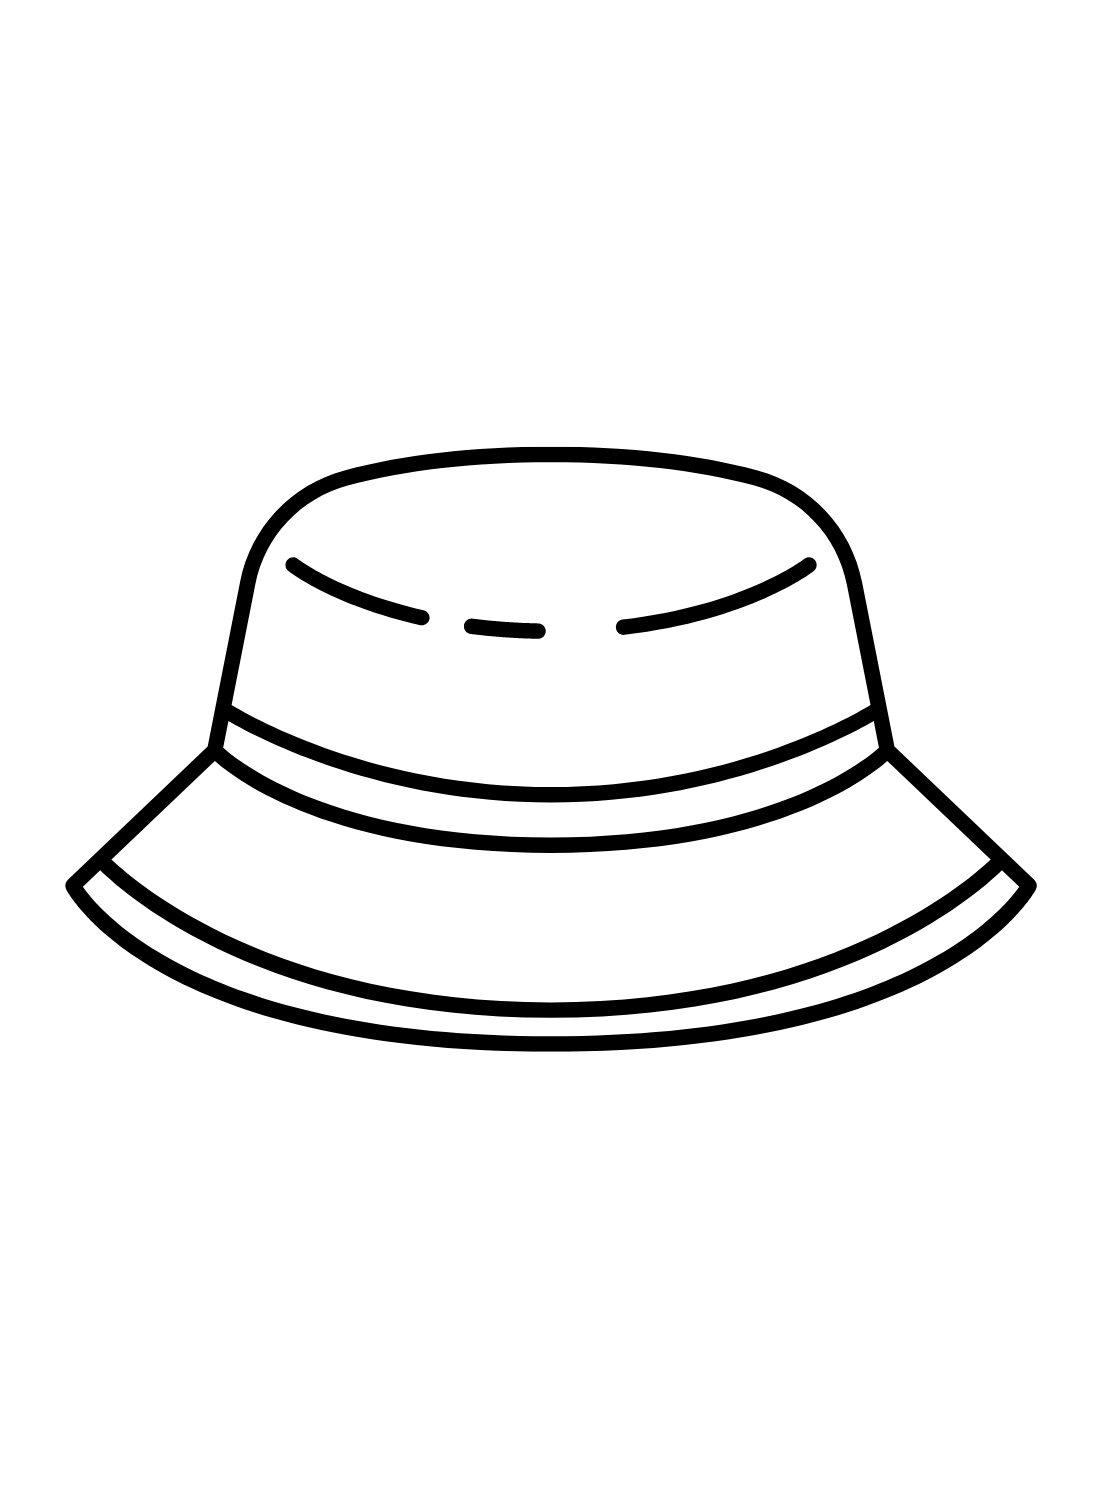 ارسم قبعة سهلة من القبعة